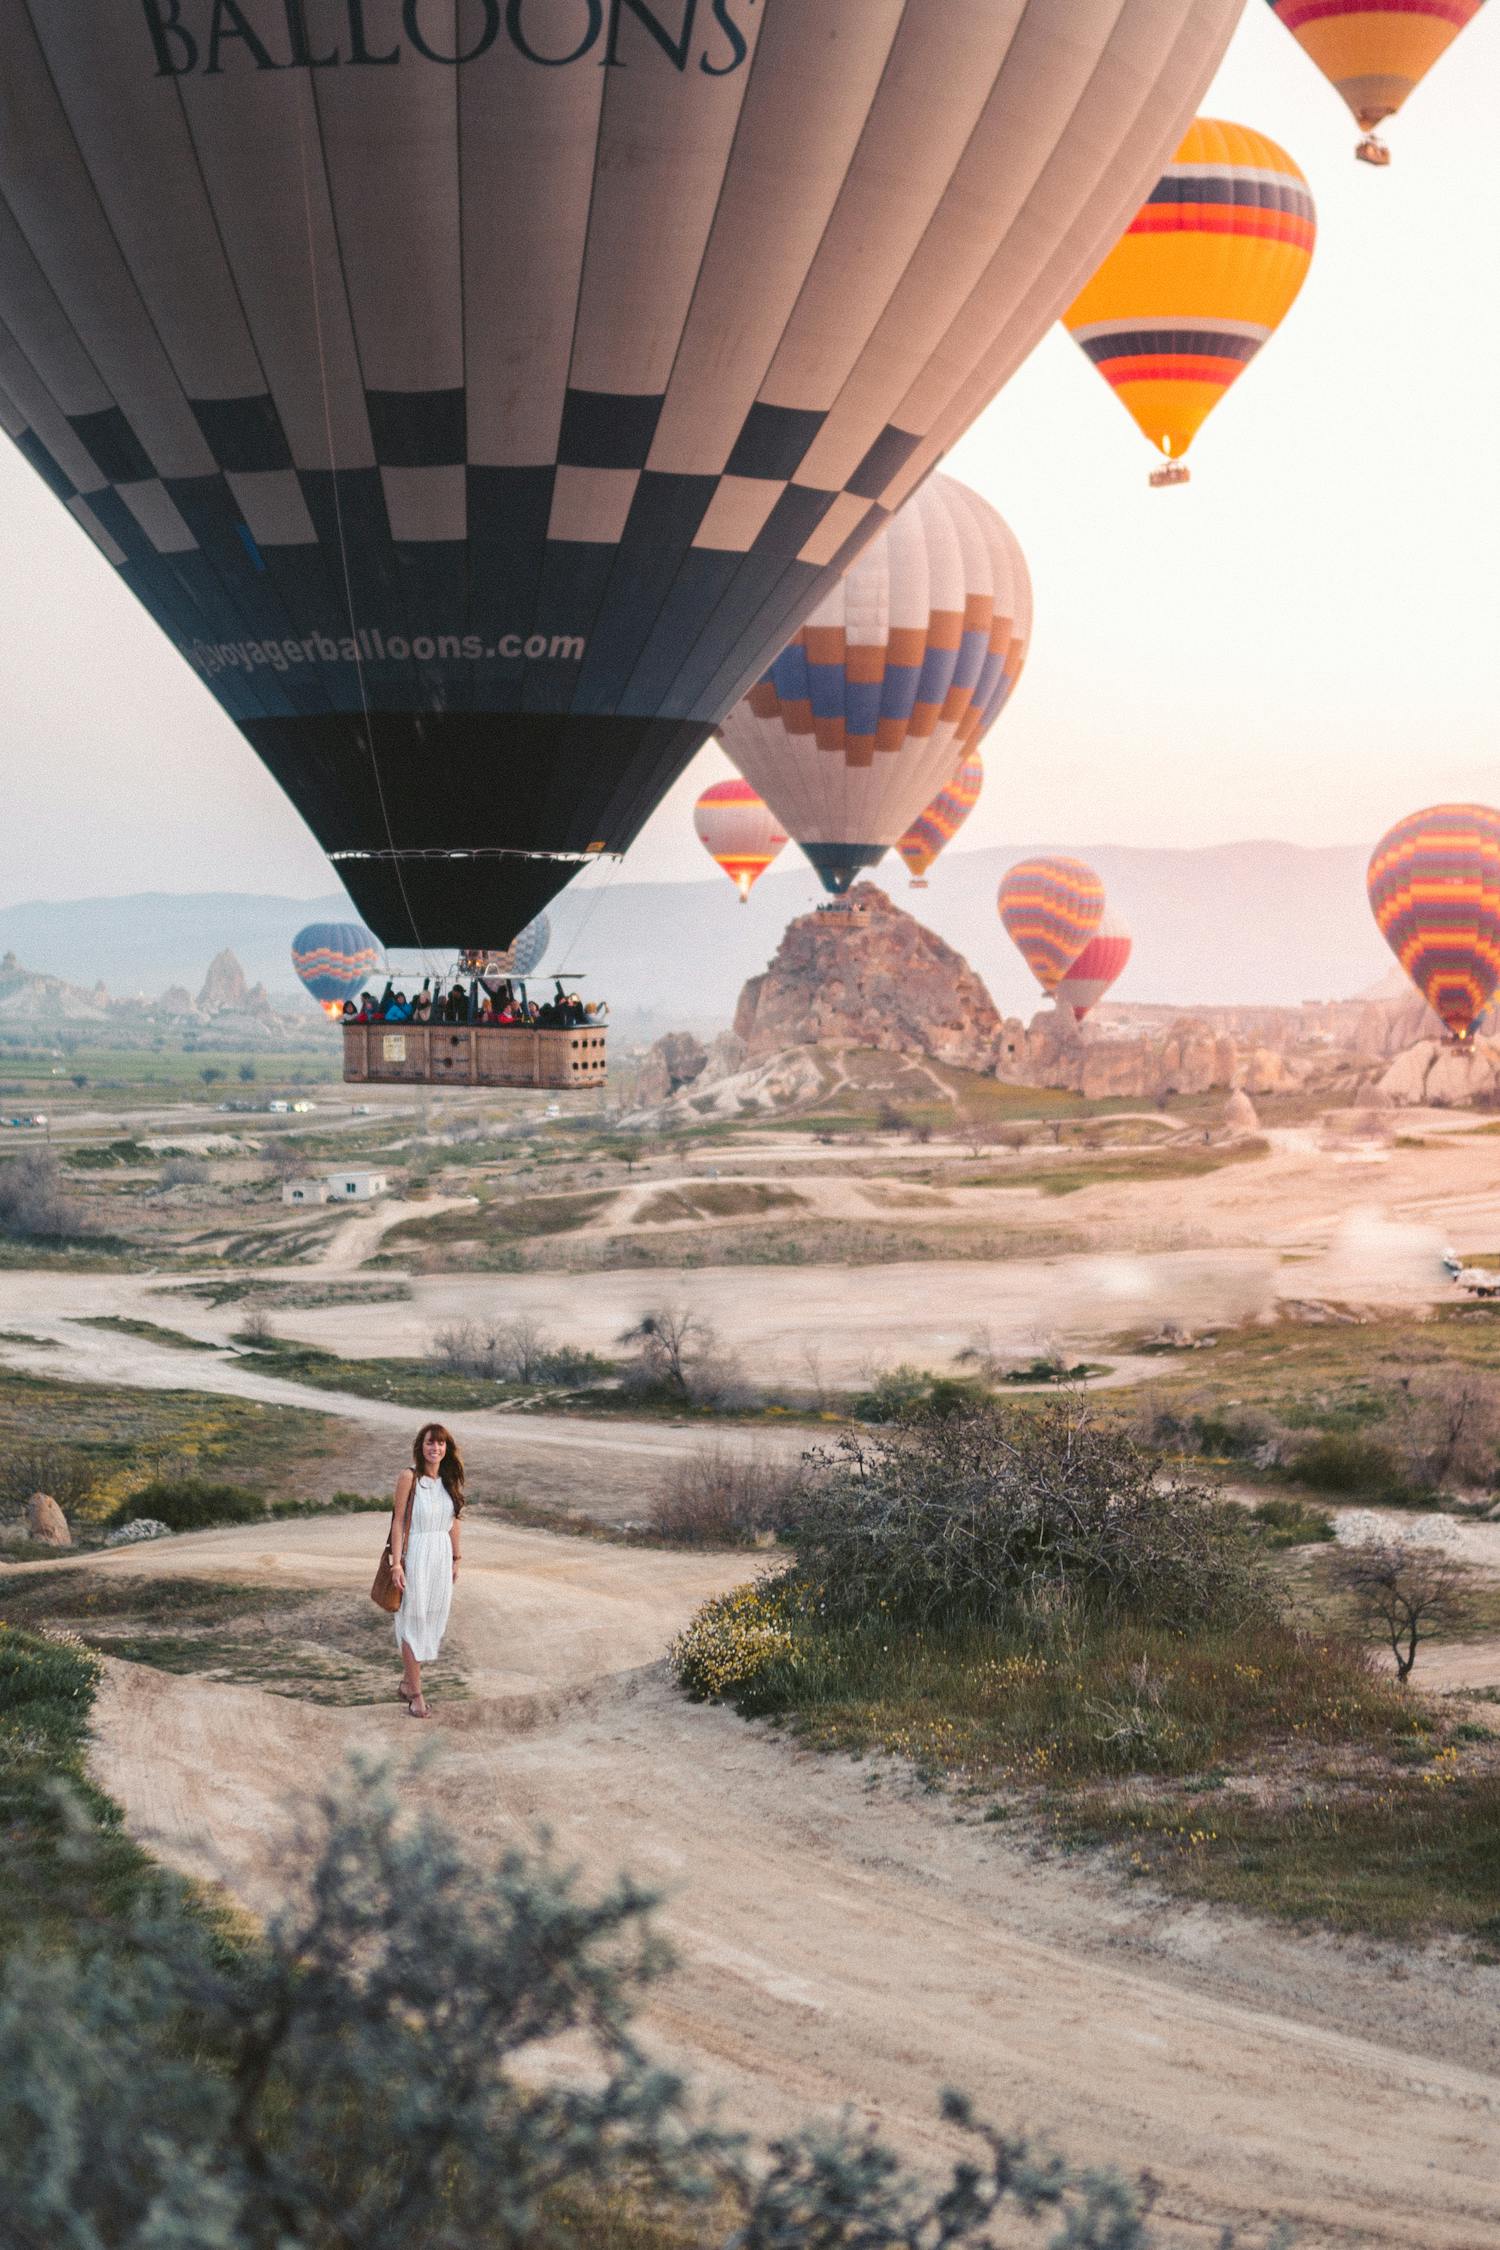 Woman Standing Under Hot Air Balloons